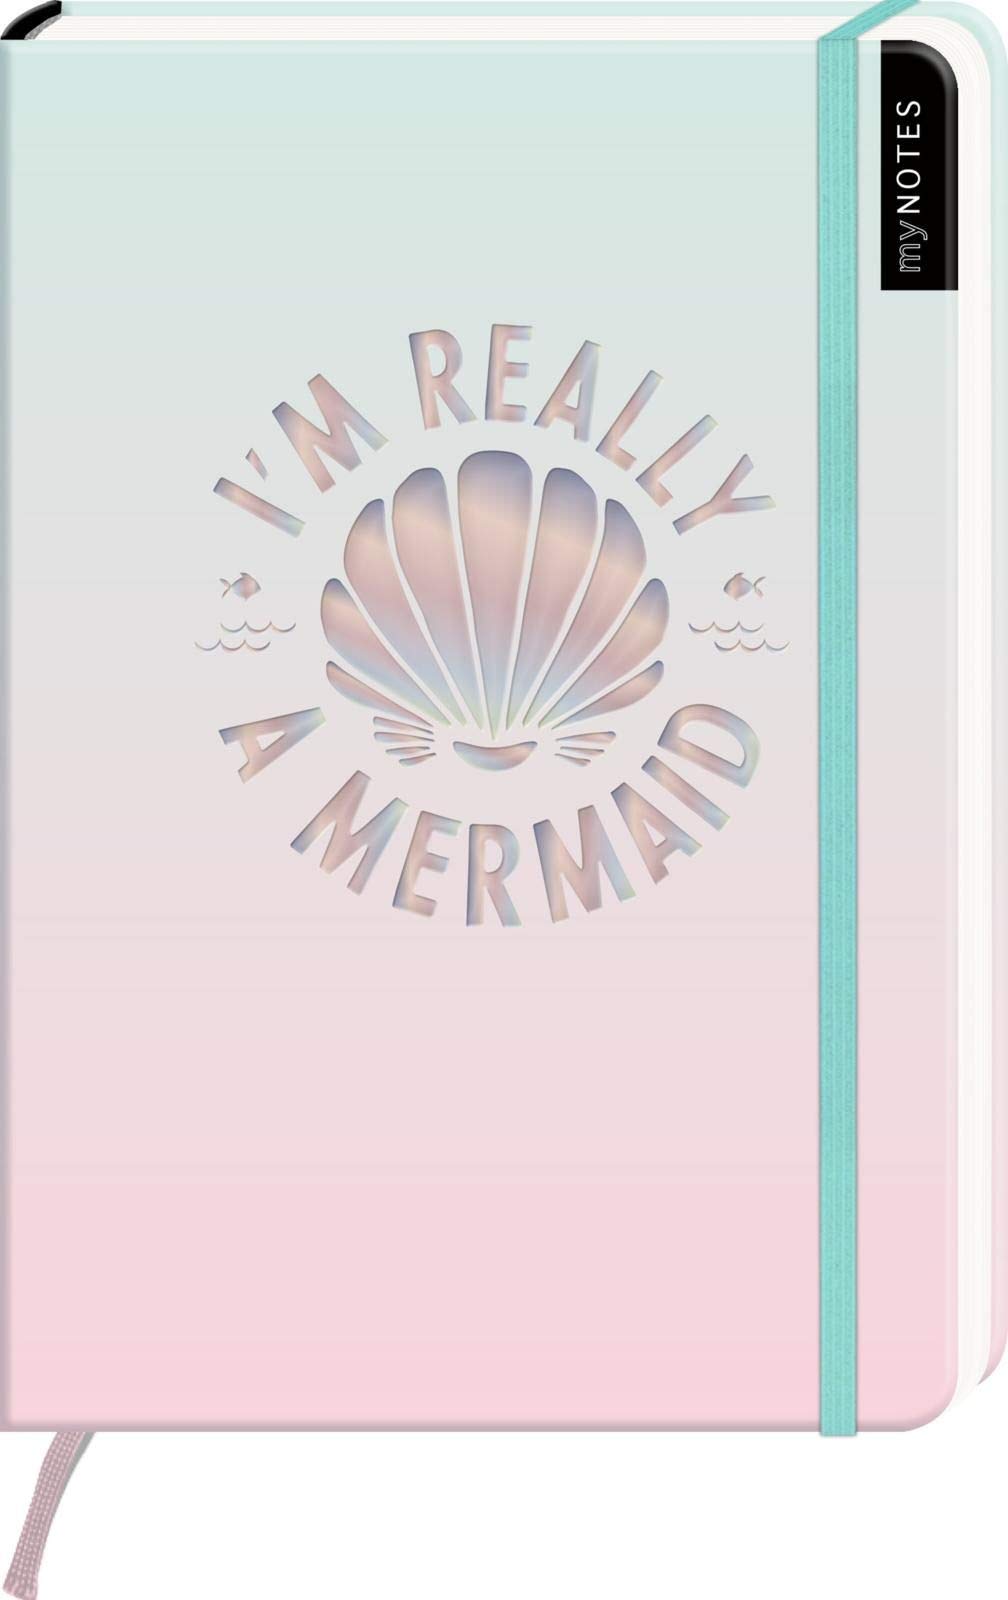 myNOTES I'm really a mermaid - Notizbuch im Mediumformat für Träume, Pläne und Ideen